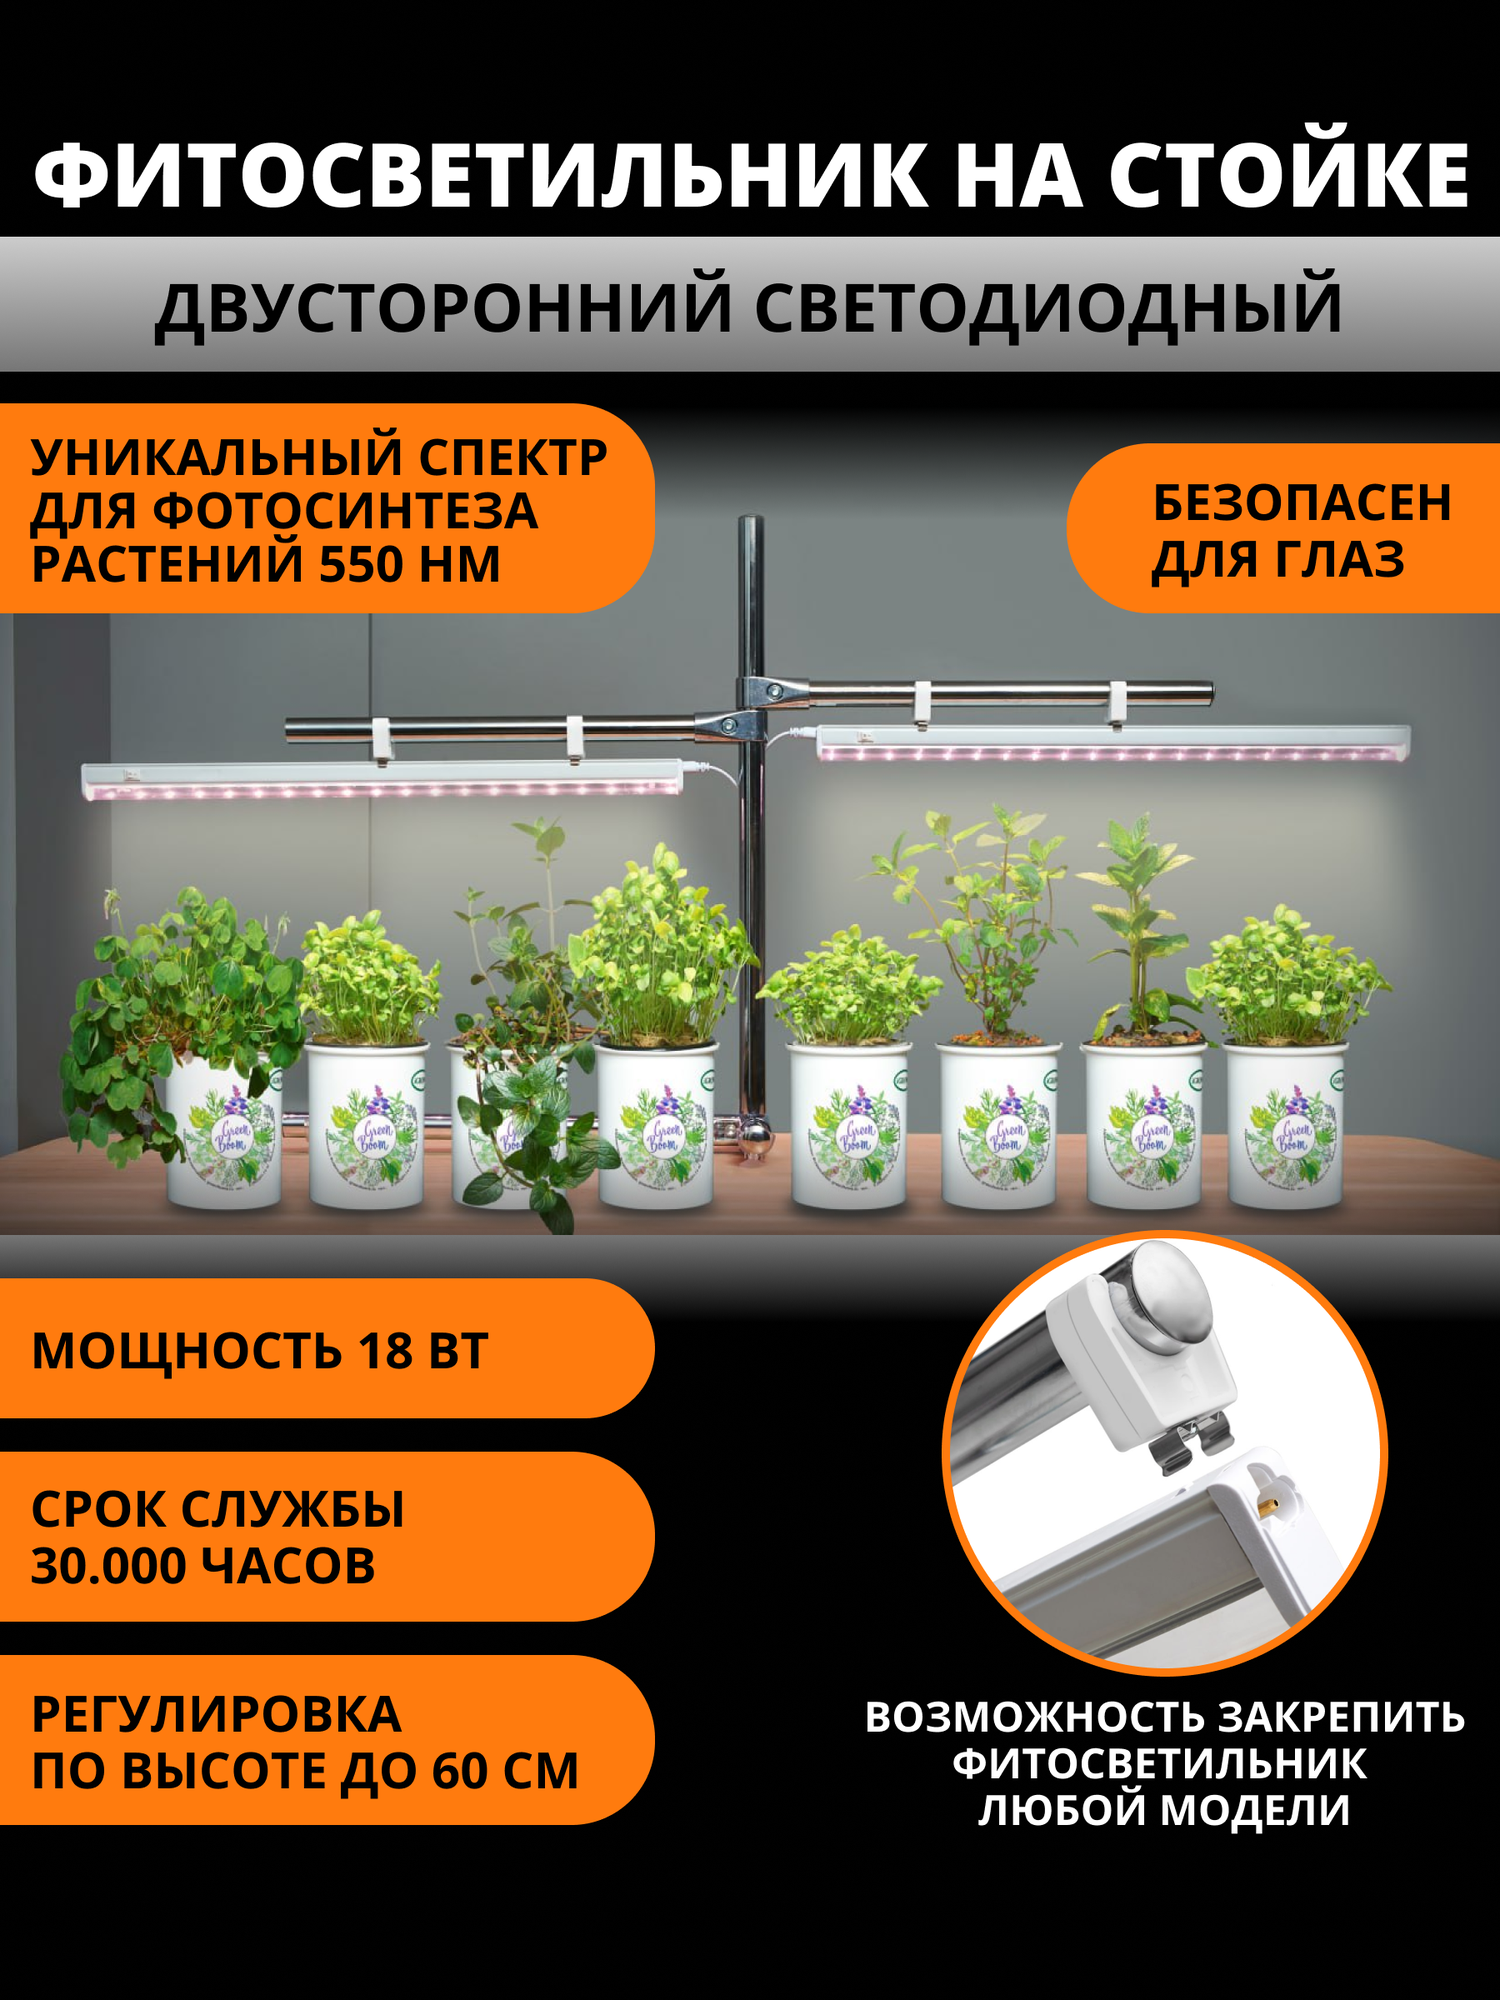 Фитосветильник для растений на стойке двусторонний светодиодный LI-P20-10 W/SPSBIP40 WHITE Cпектр для рассады 550 нм 10 Вт , выключатель на корпусе